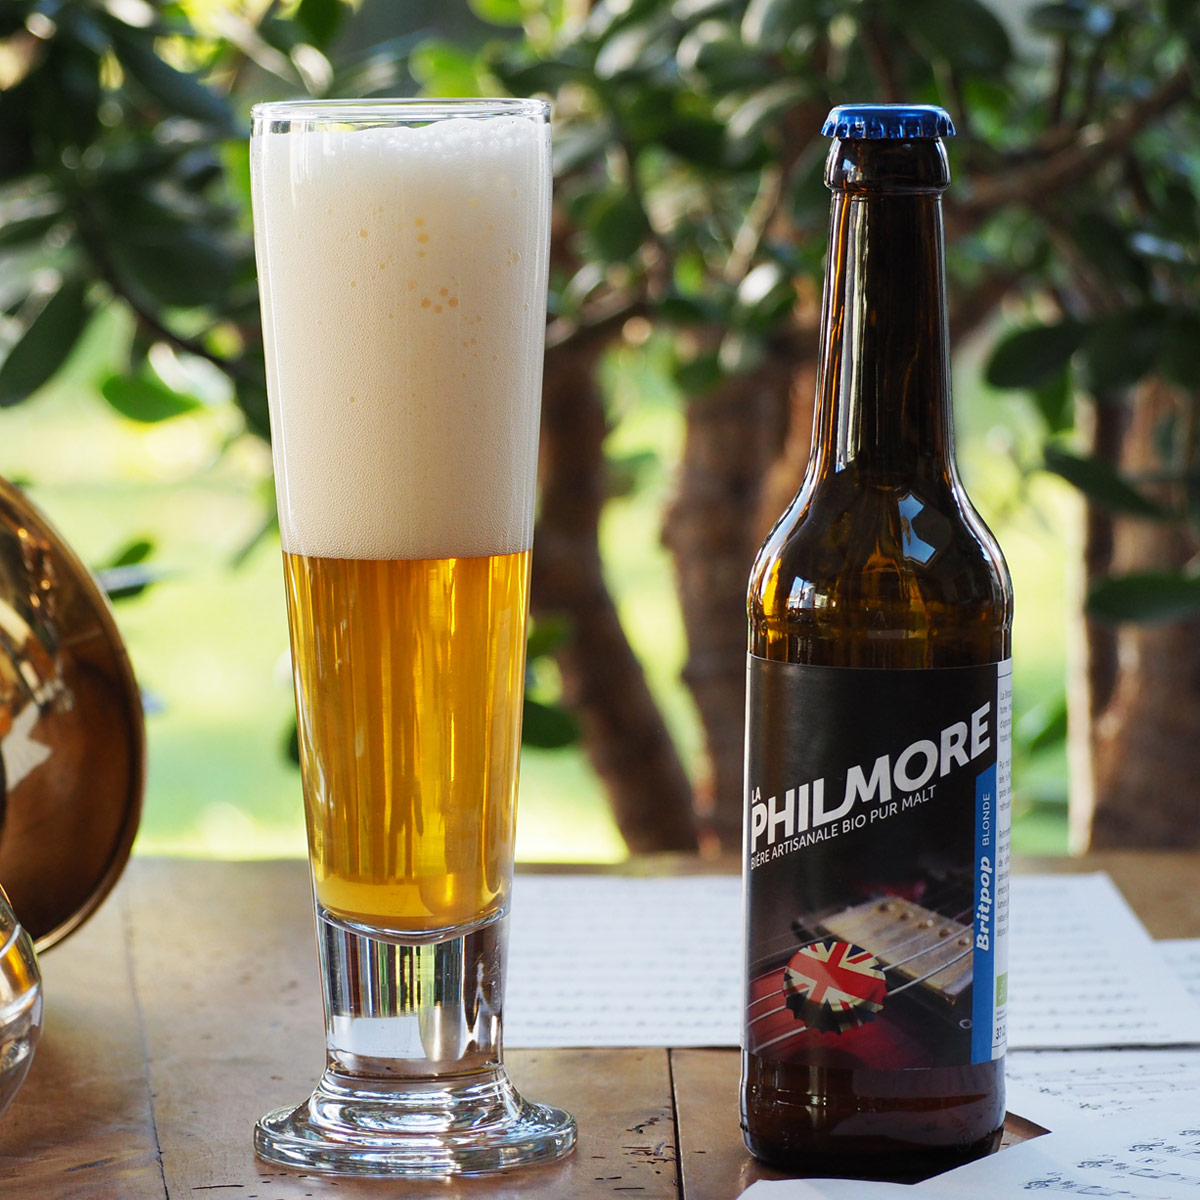 La Philmore Britpop – Bière artisanale bio et pur malt